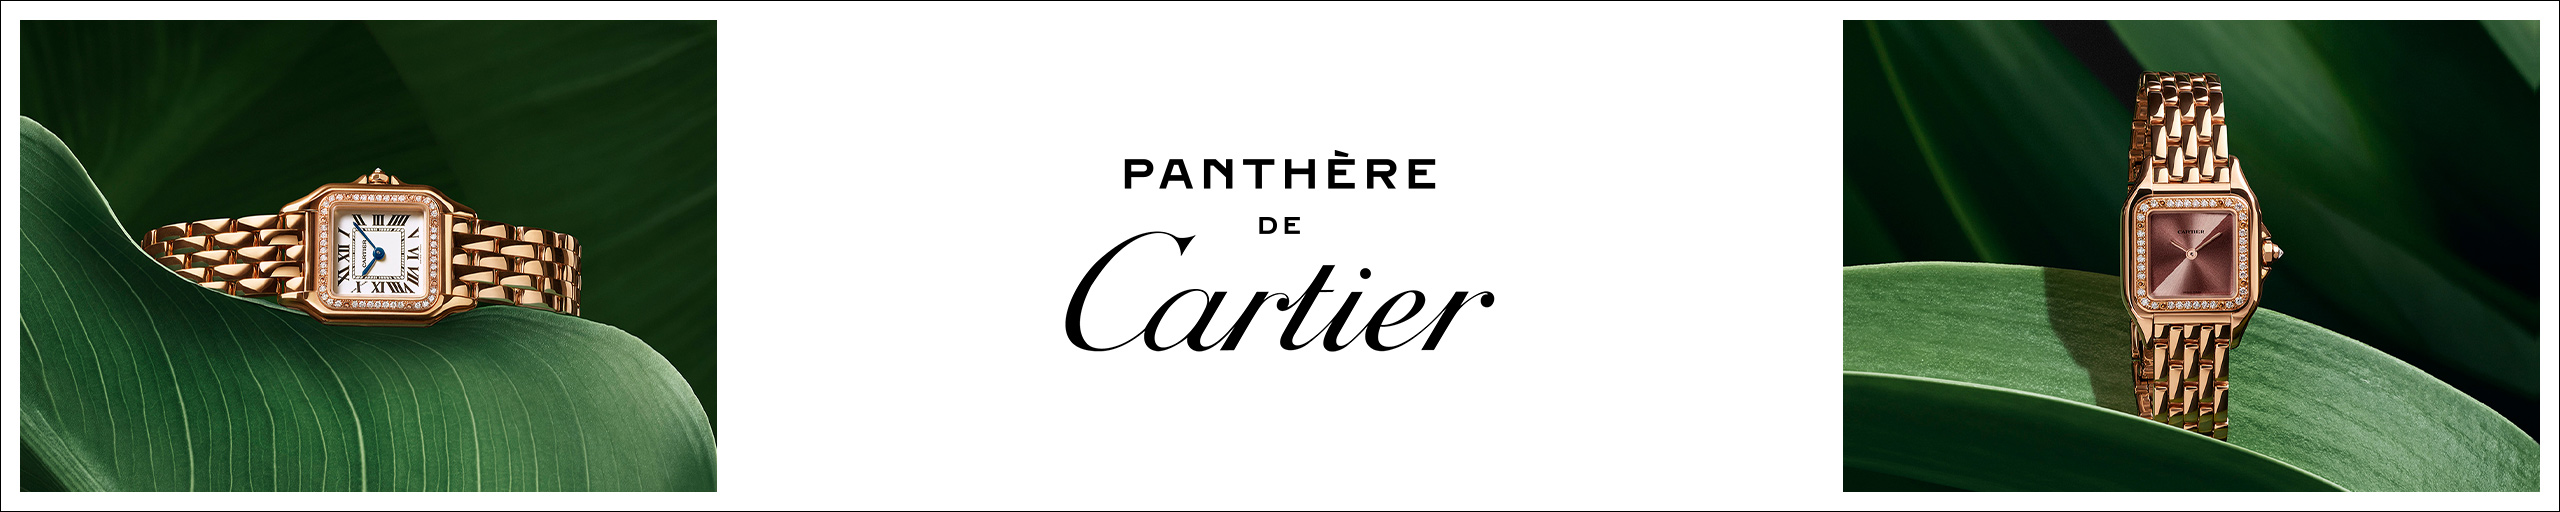 Cartier Panthère bei Juwelier Jasper in Paderborn und Lippstadt